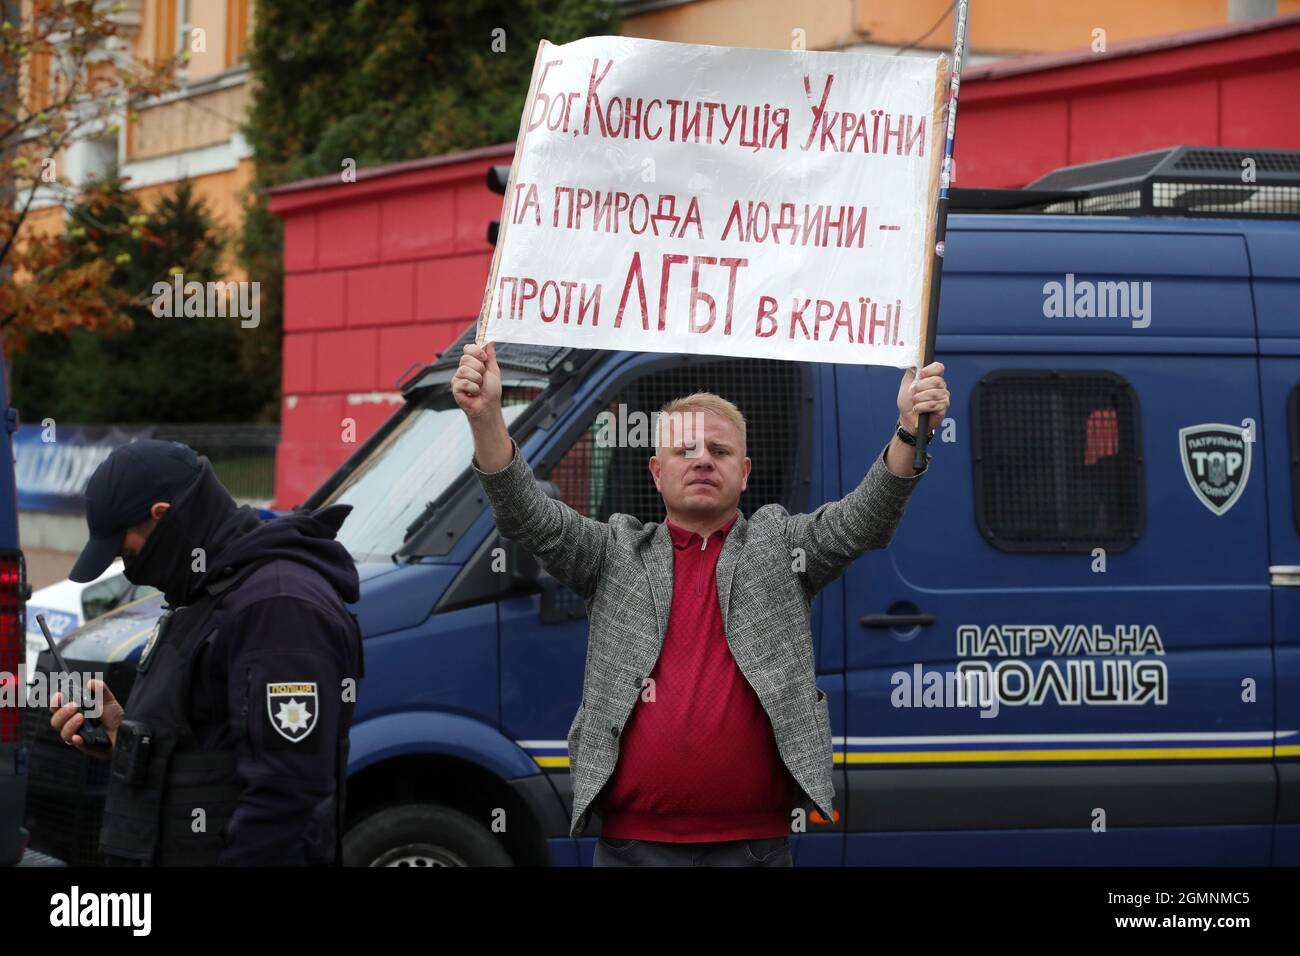 Non Exclusive: Aktivisten halten die Regenbogenfahne auf der Volodymyrska Street während des Equality Marsches, der zur Unterstützung der LGBTQ-Gemeinschaft unter Th durchgeführt wurde Stockfoto